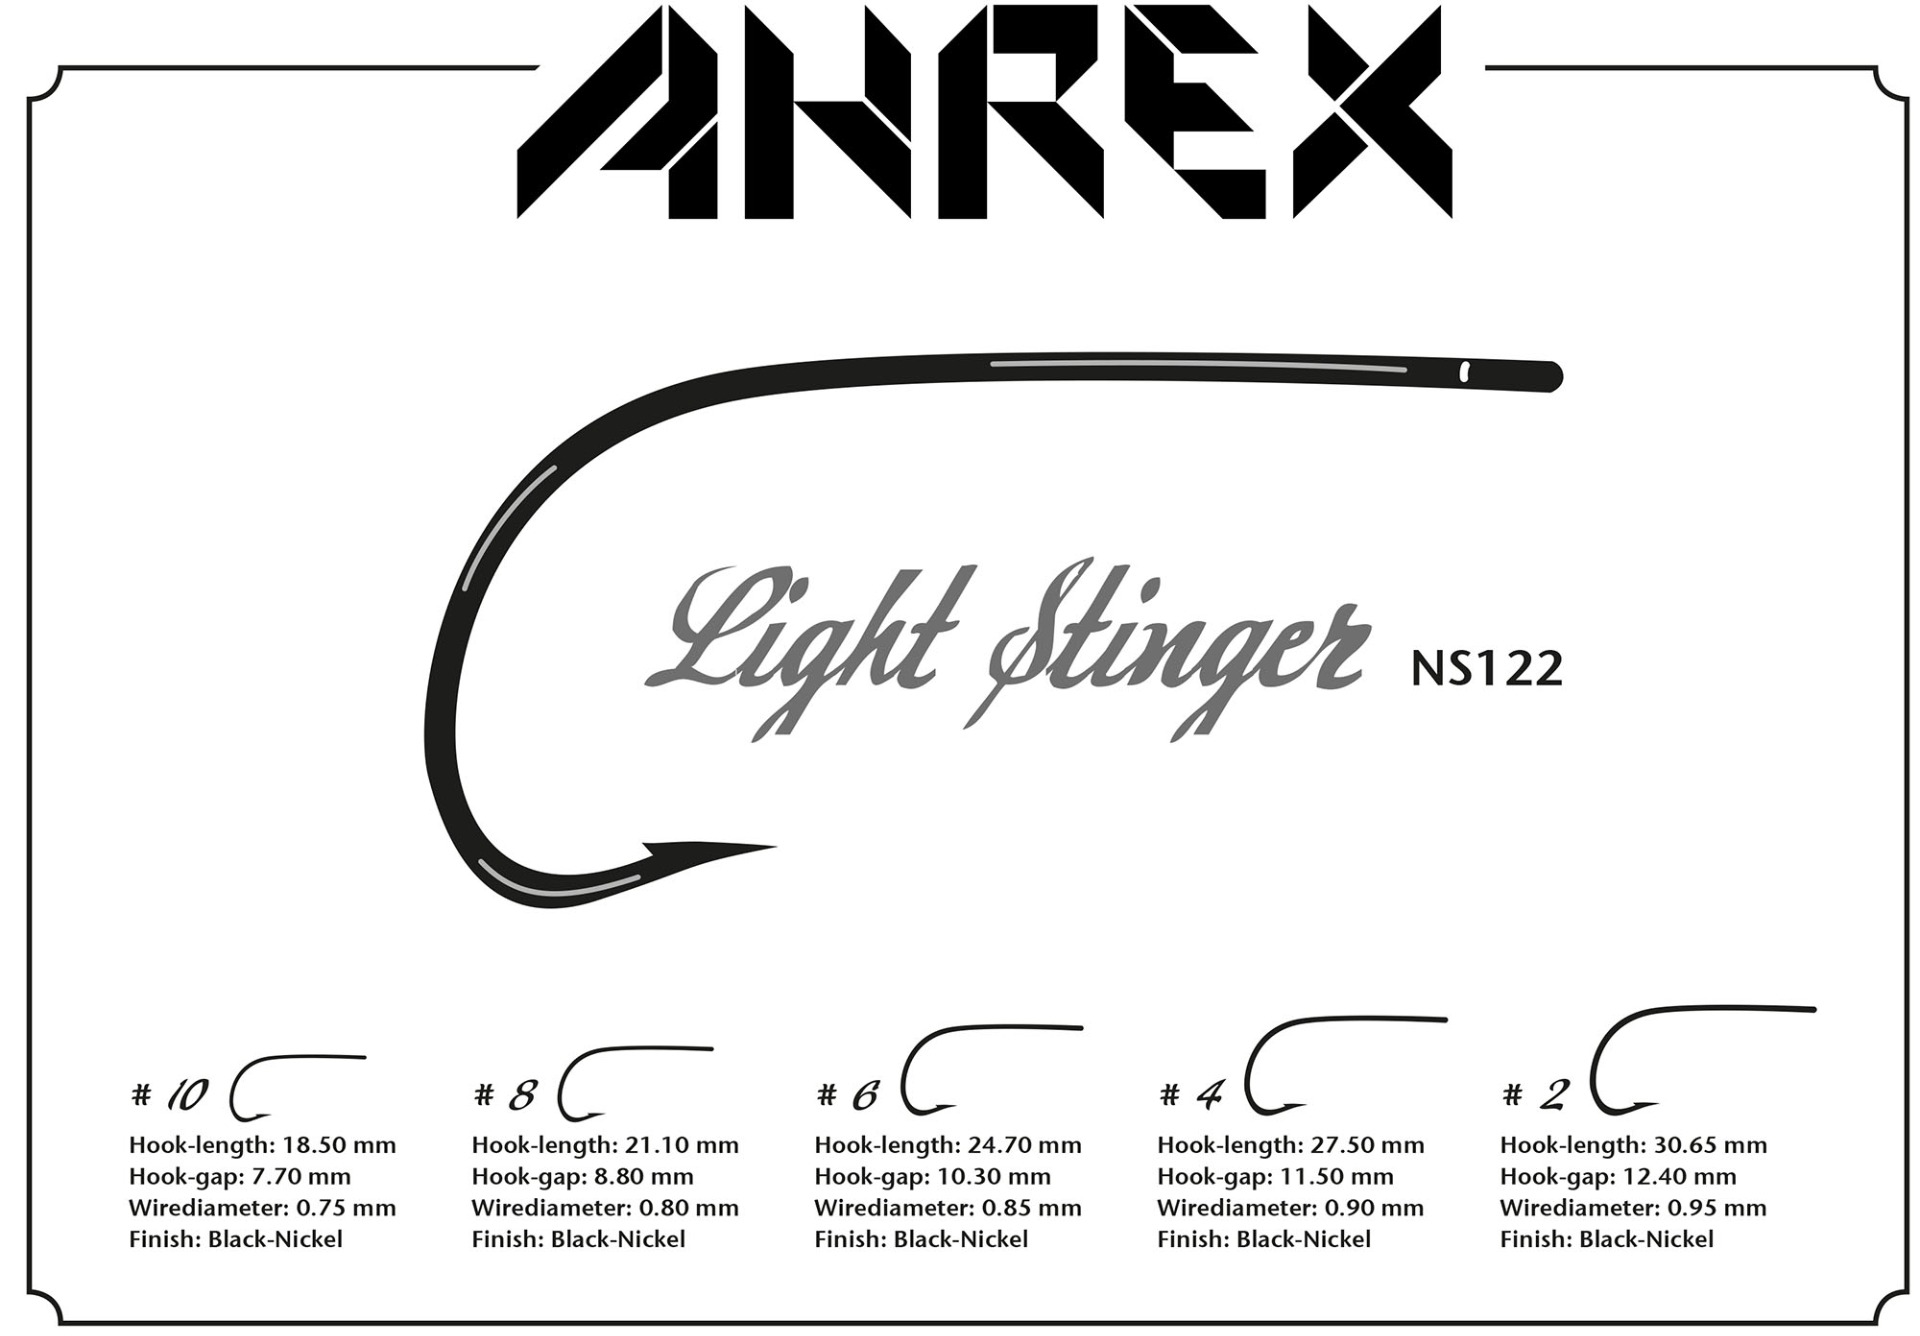 Ahrex Light Stinger #4